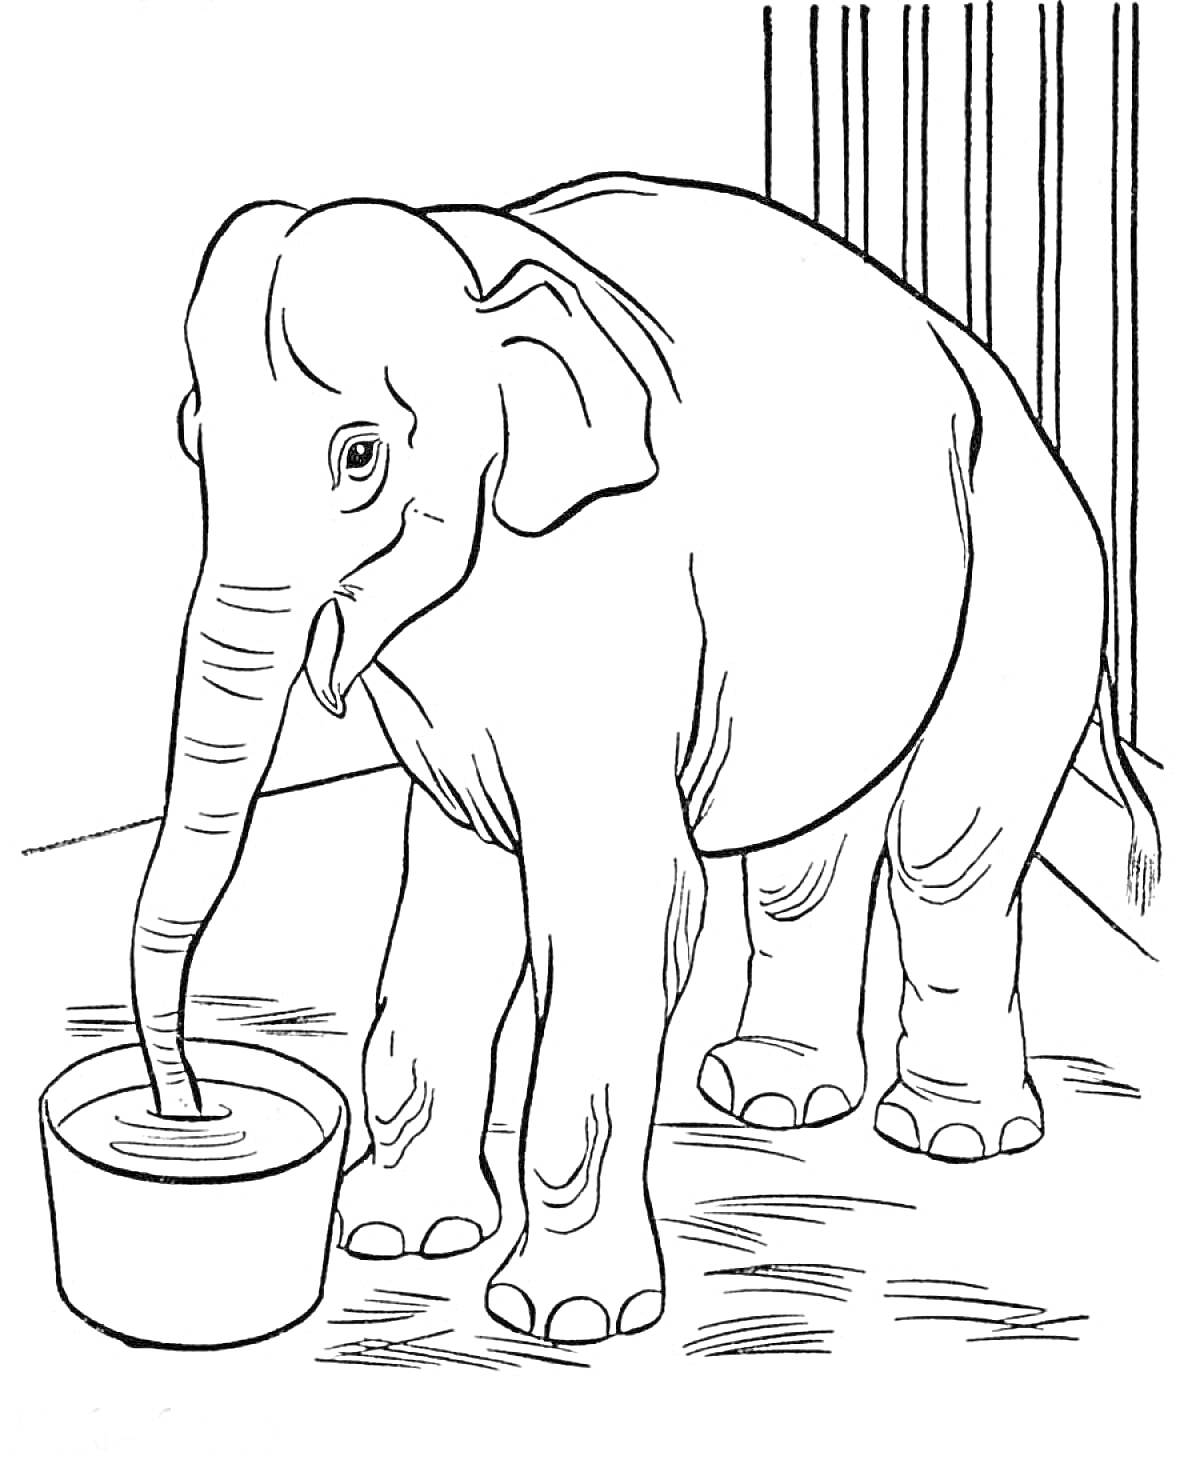 Слон пьет воду из ведра в клетке